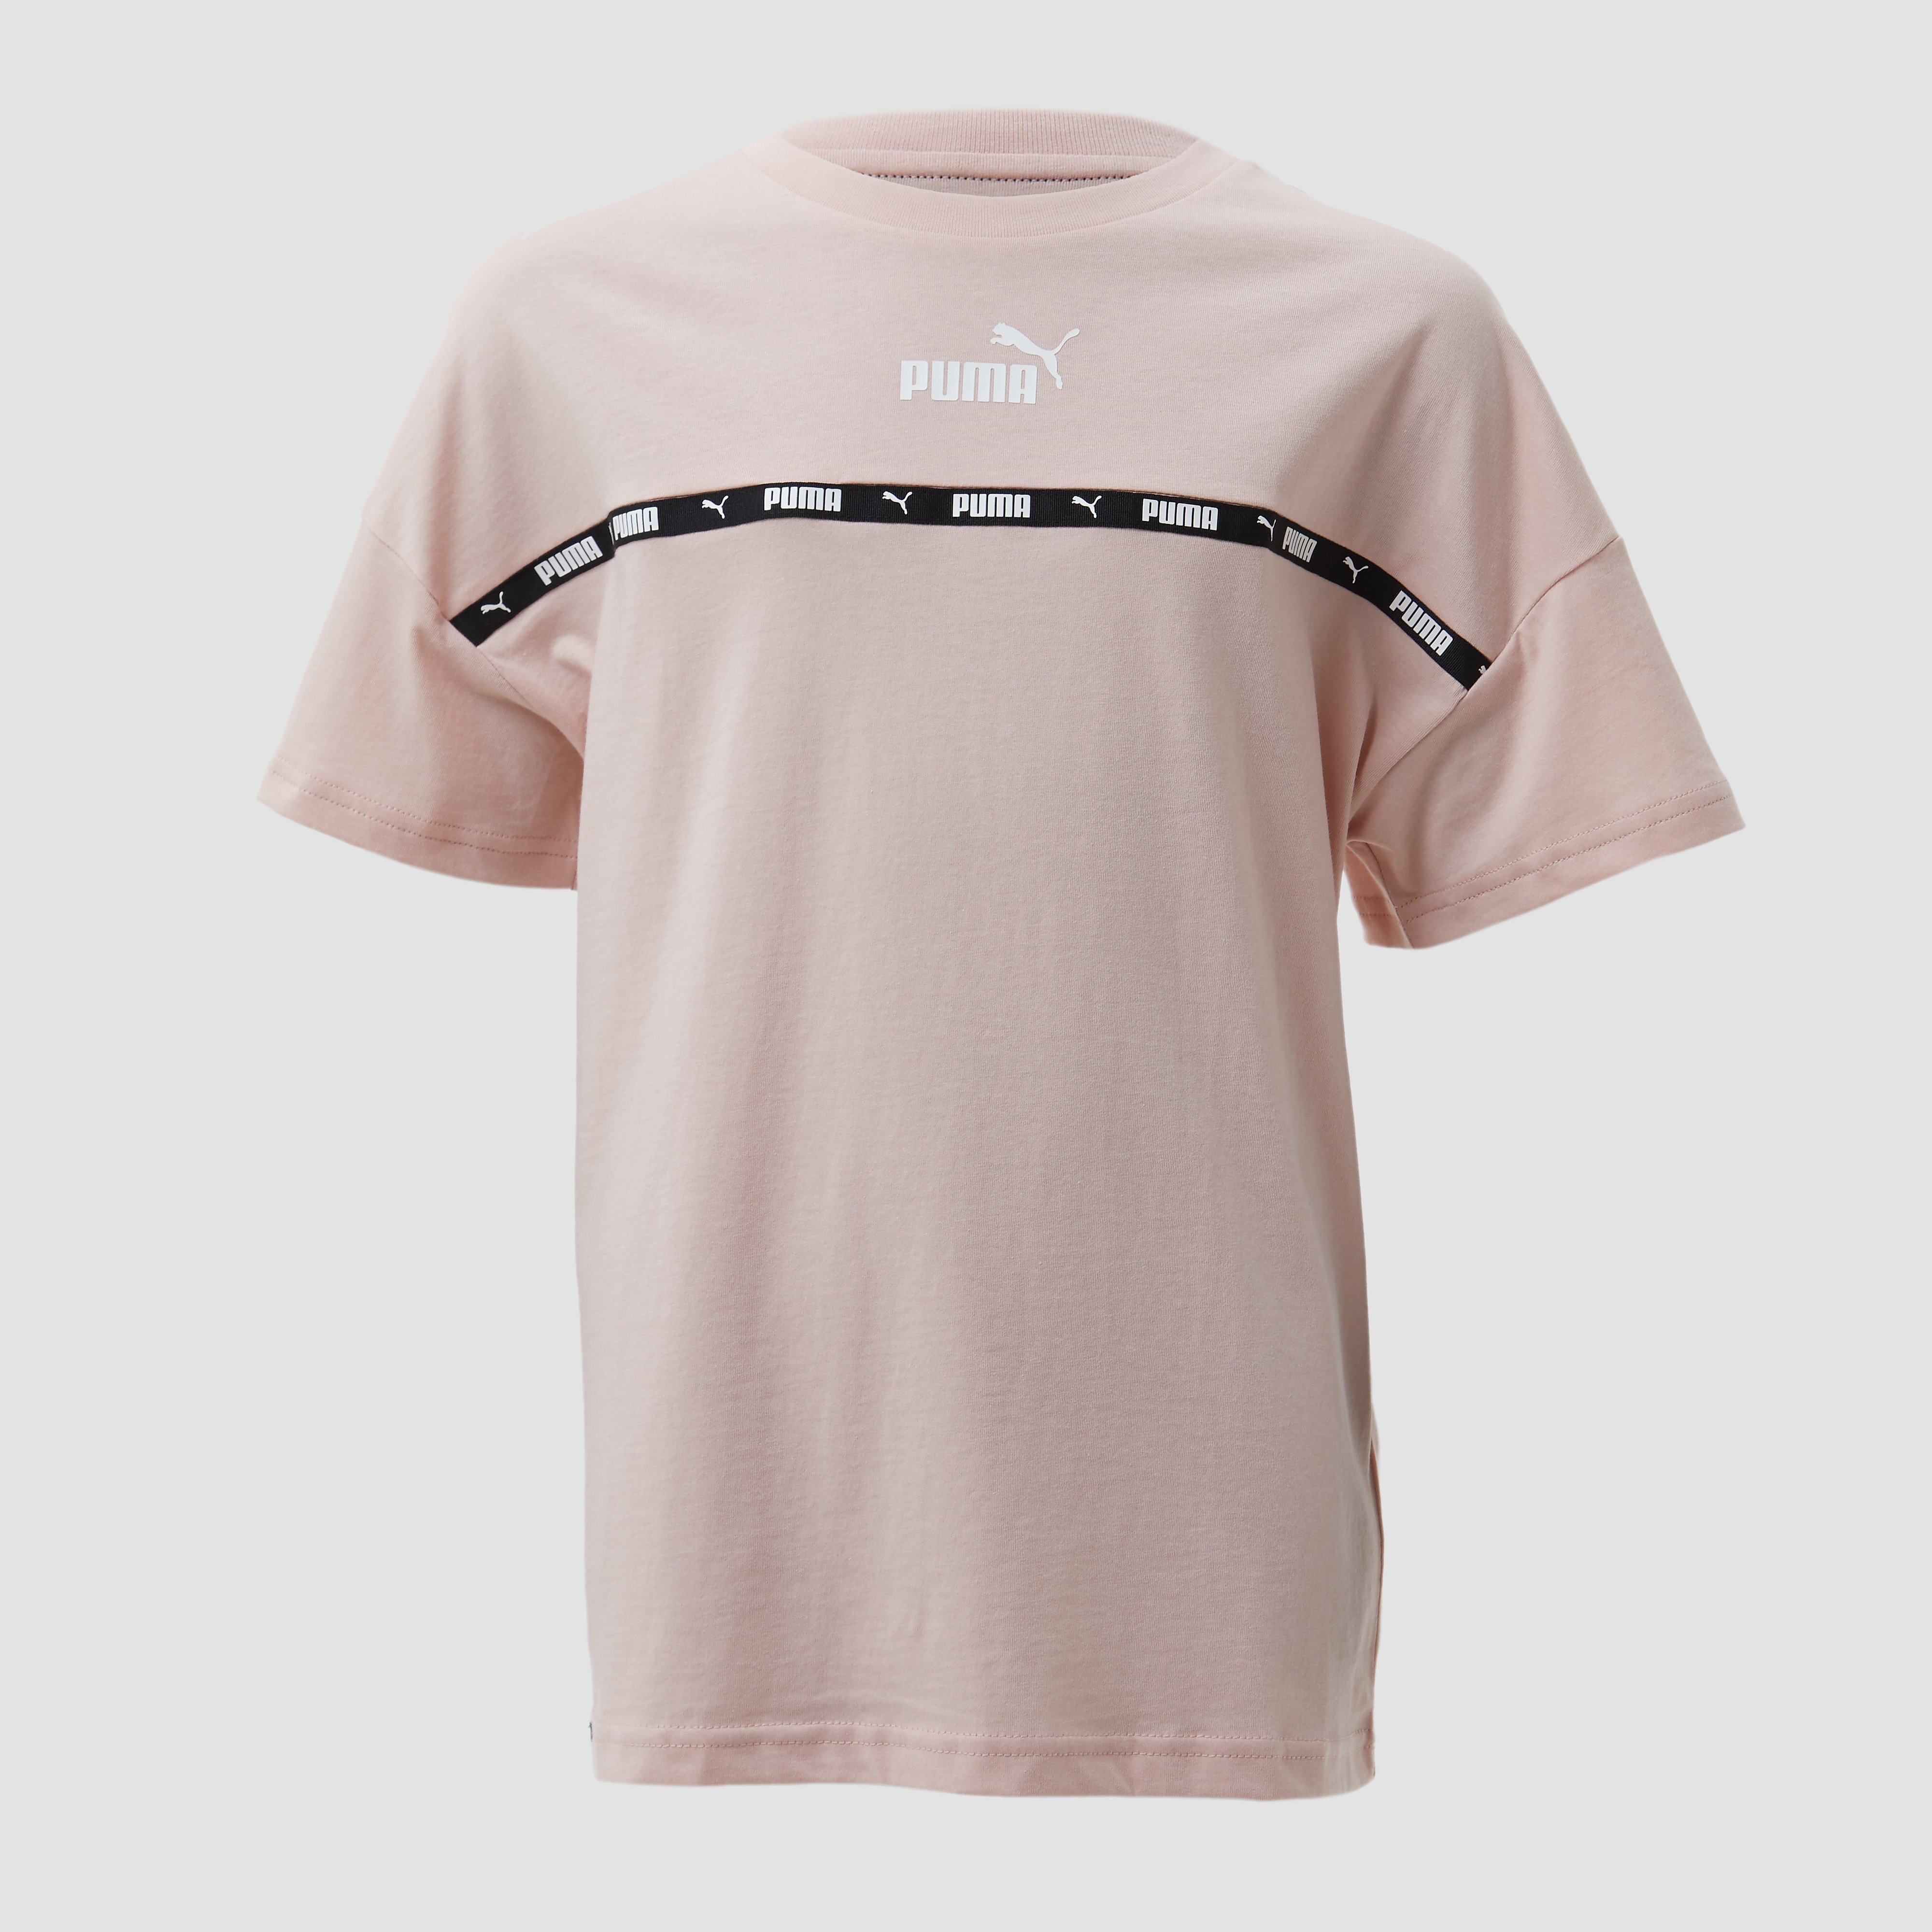 Puma T shirt bambina power tape tee 670200.47 online kopen